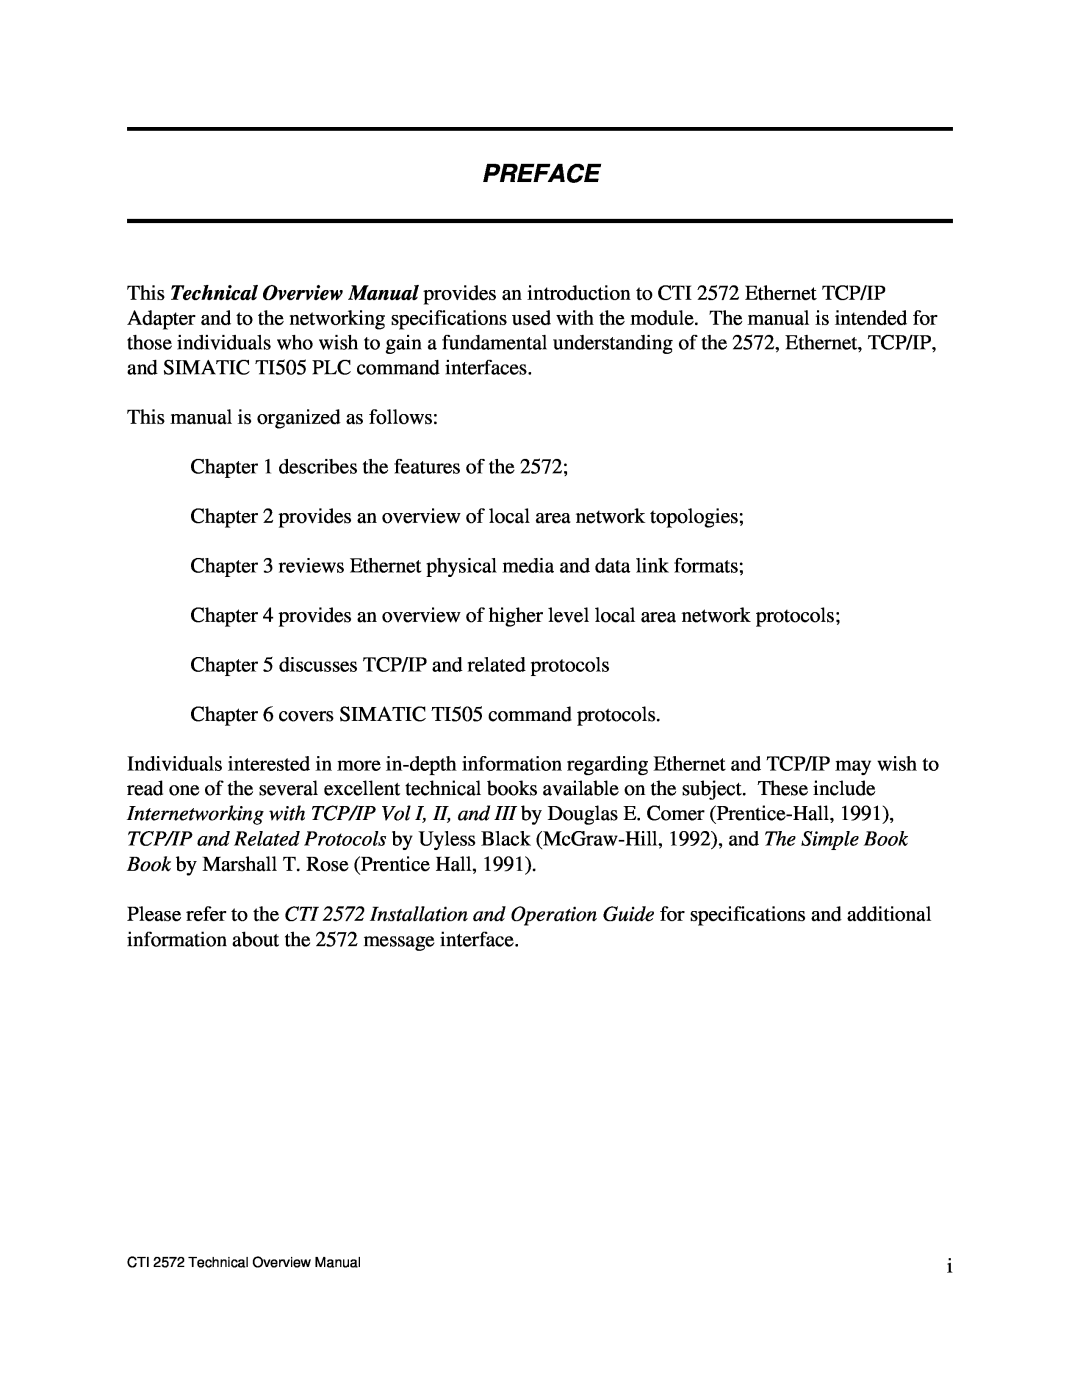 IBM CTI 2572 manual Preface 